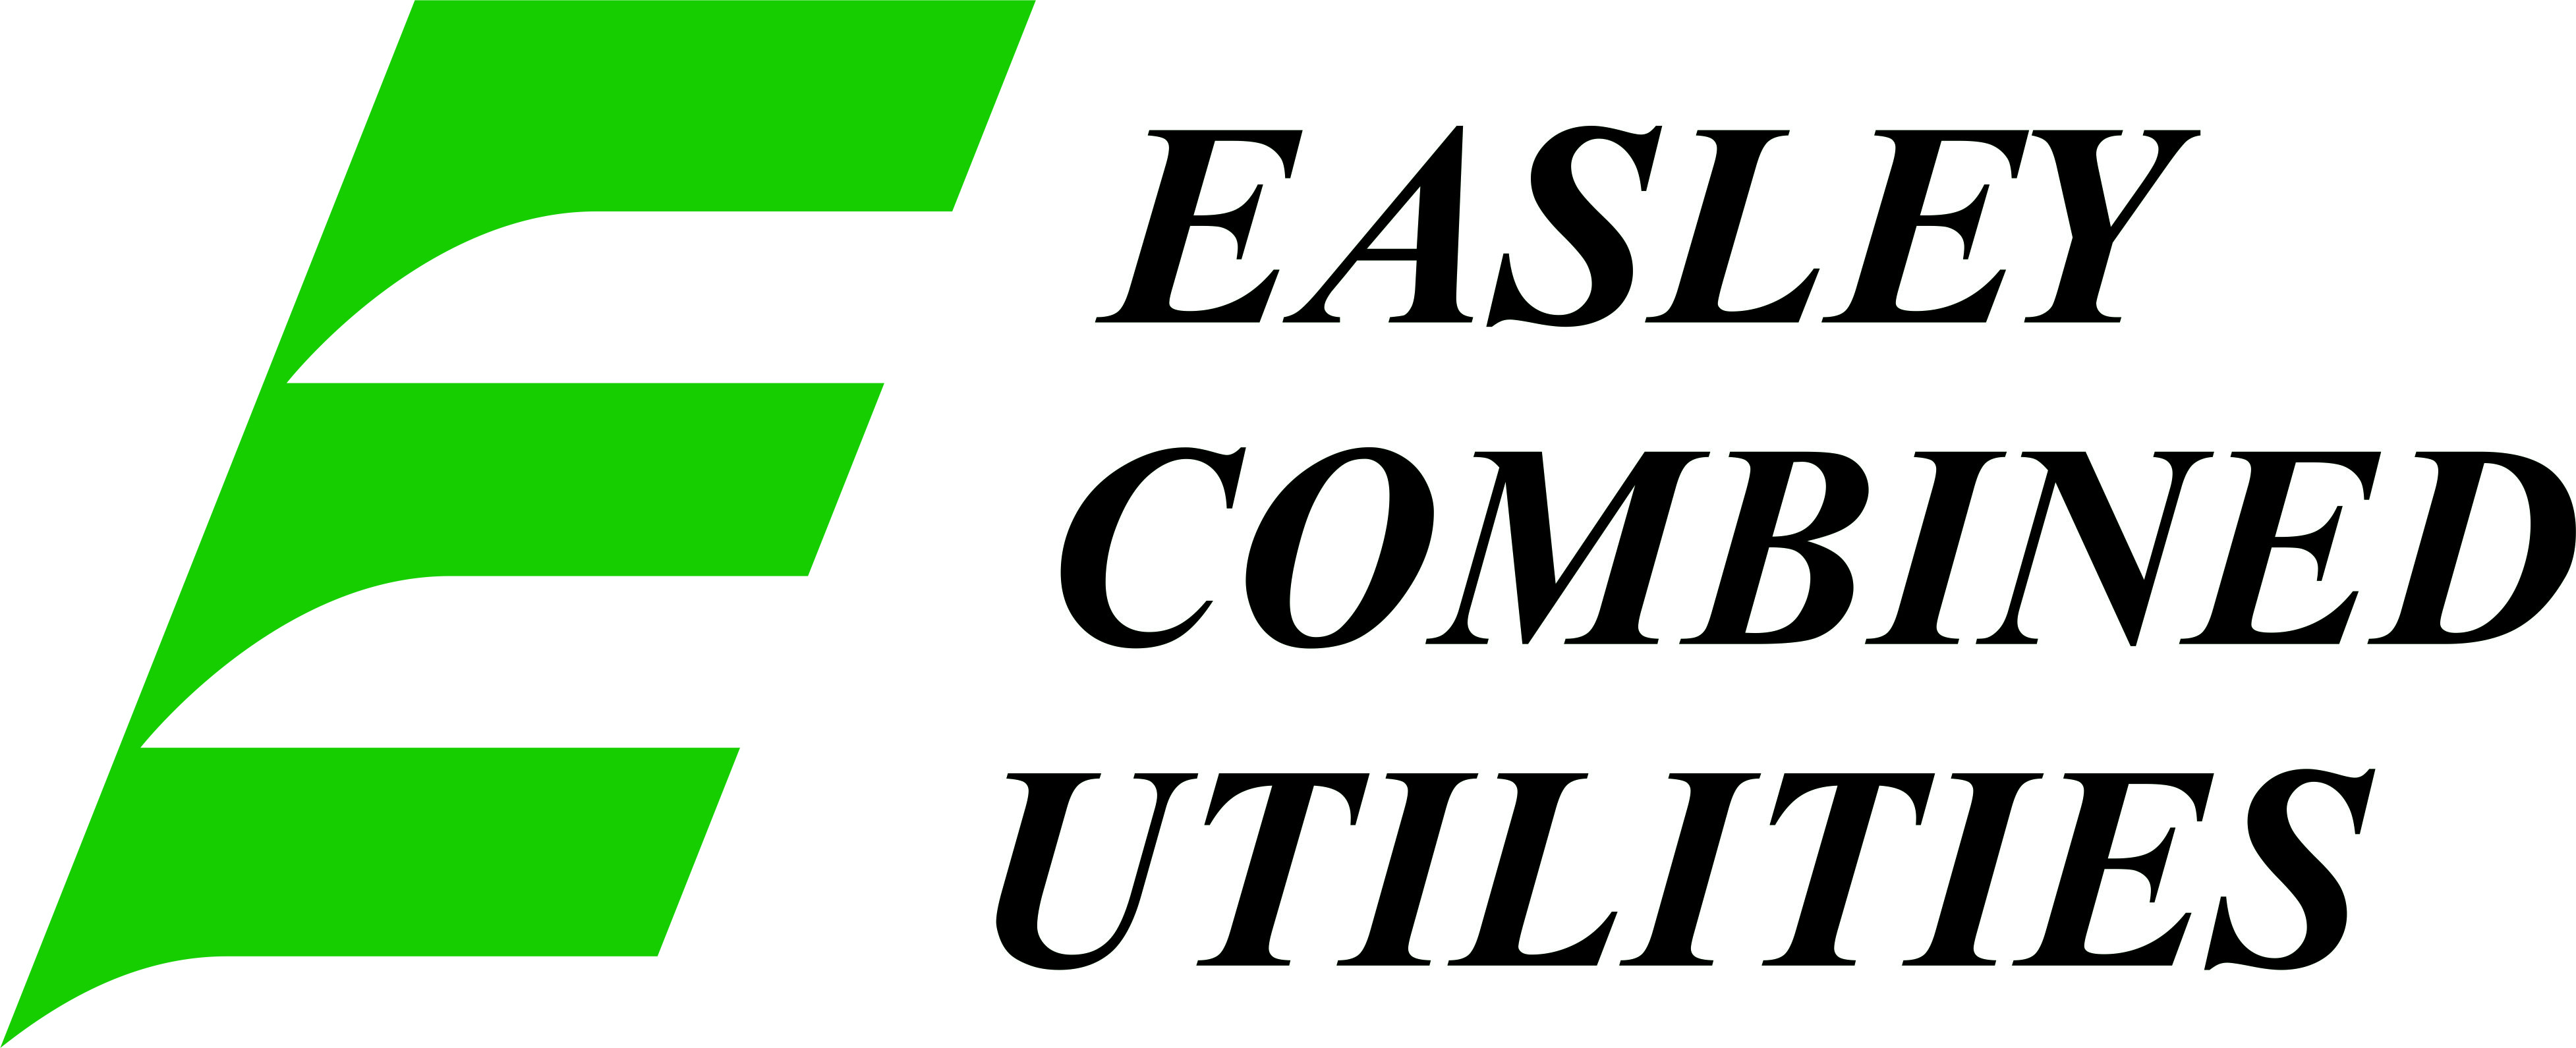 Easley Combined Utilities